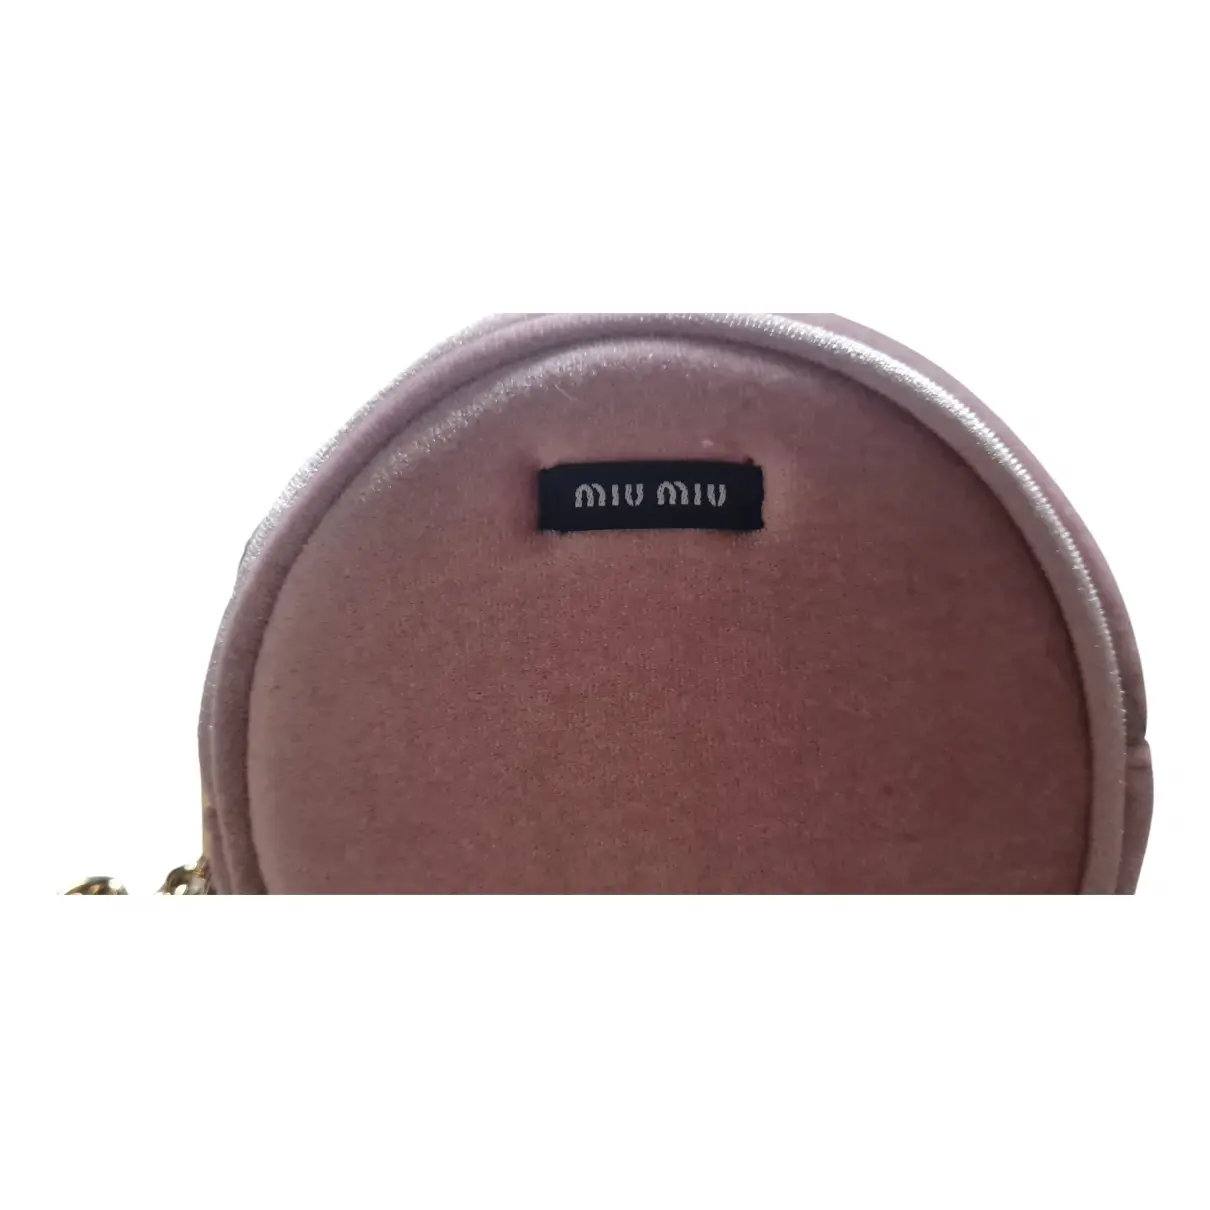 Buy Miu Miu Velvet clutch bag online